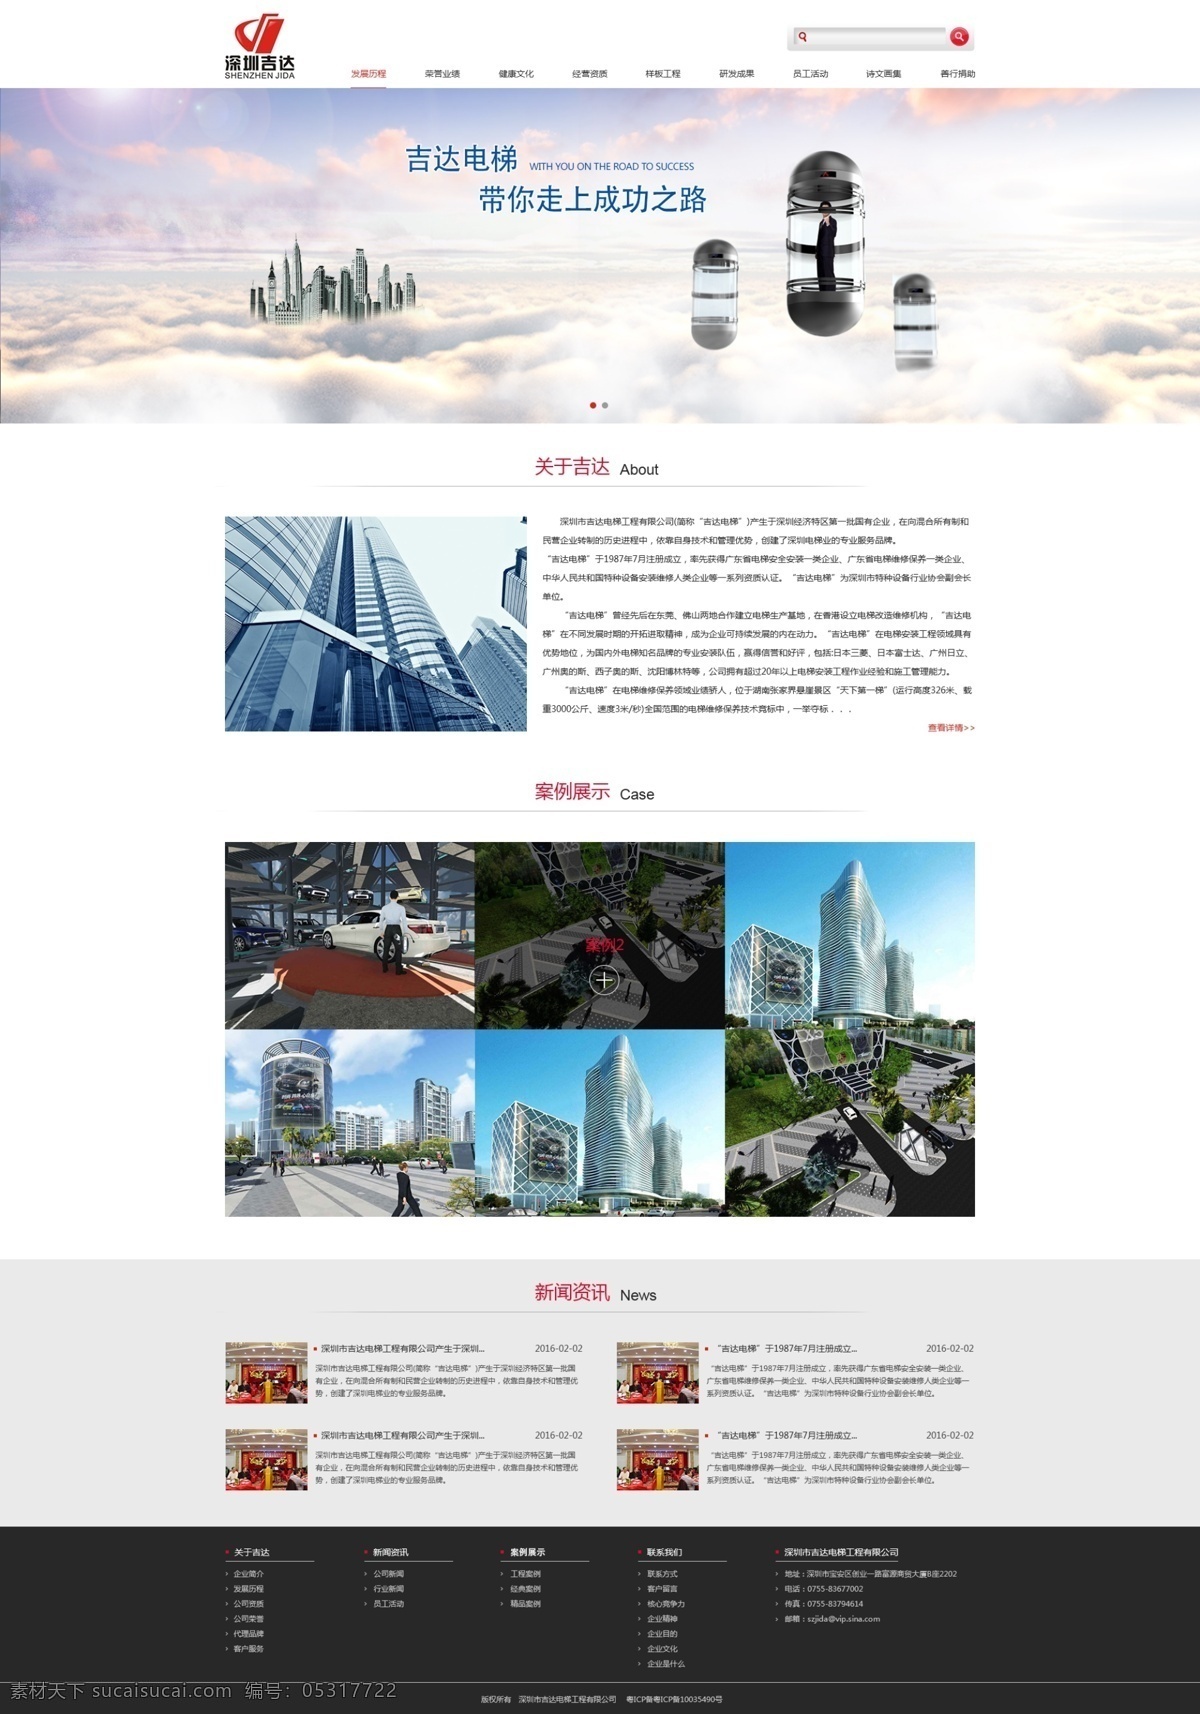 企业网页设计 网页设计 网页 企业网页 公司网站建设 公司网站设计 网站设计 网站 web 界面设计 中文模板